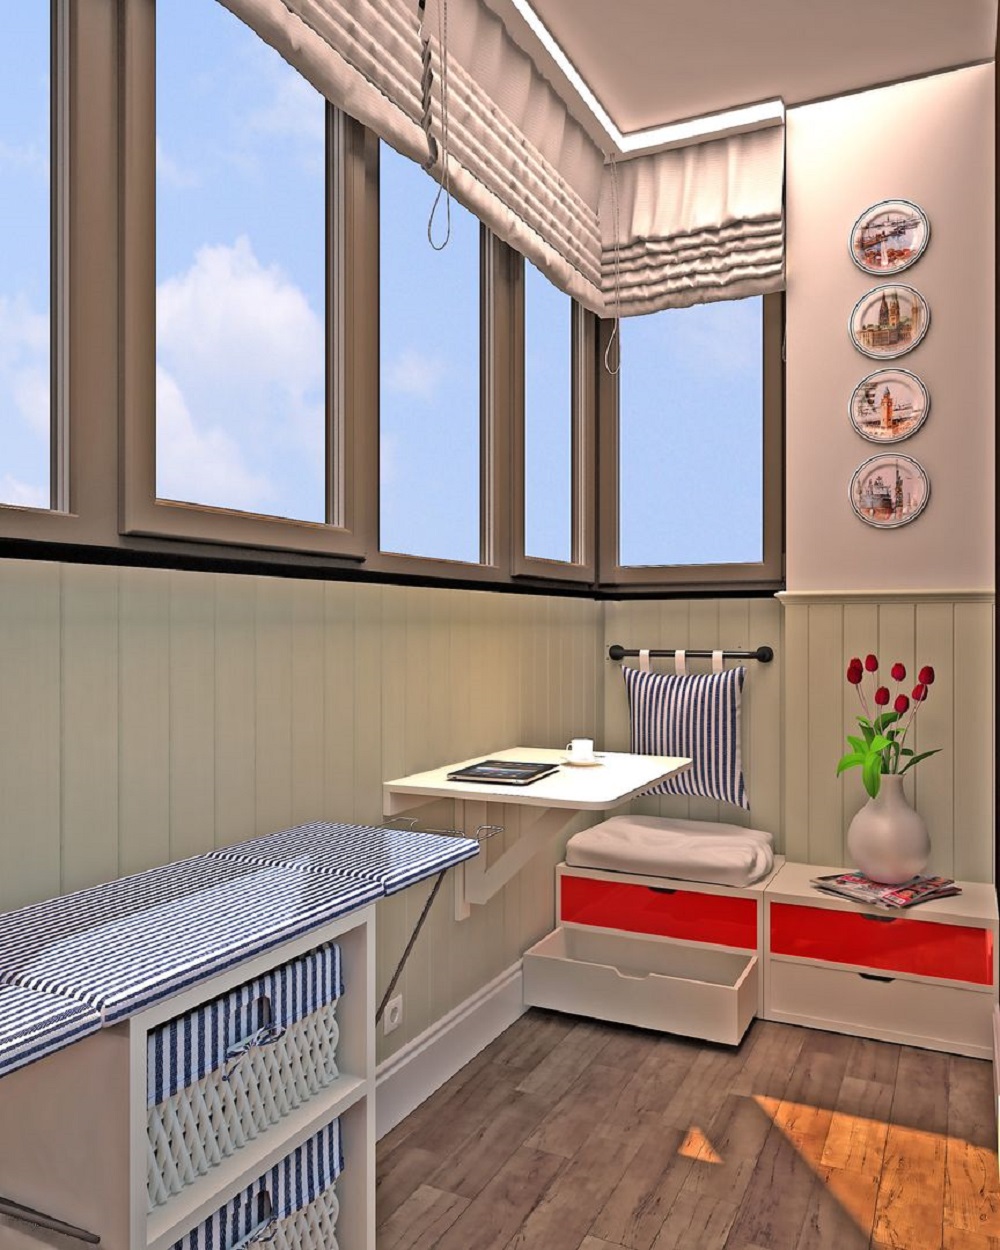 Лоджия совмещенная с кухней. Кухня совмещенная с балконом. Кухня на лоджии. Прямоугольная кухня с балконом. Кухня с смешенным балконом.